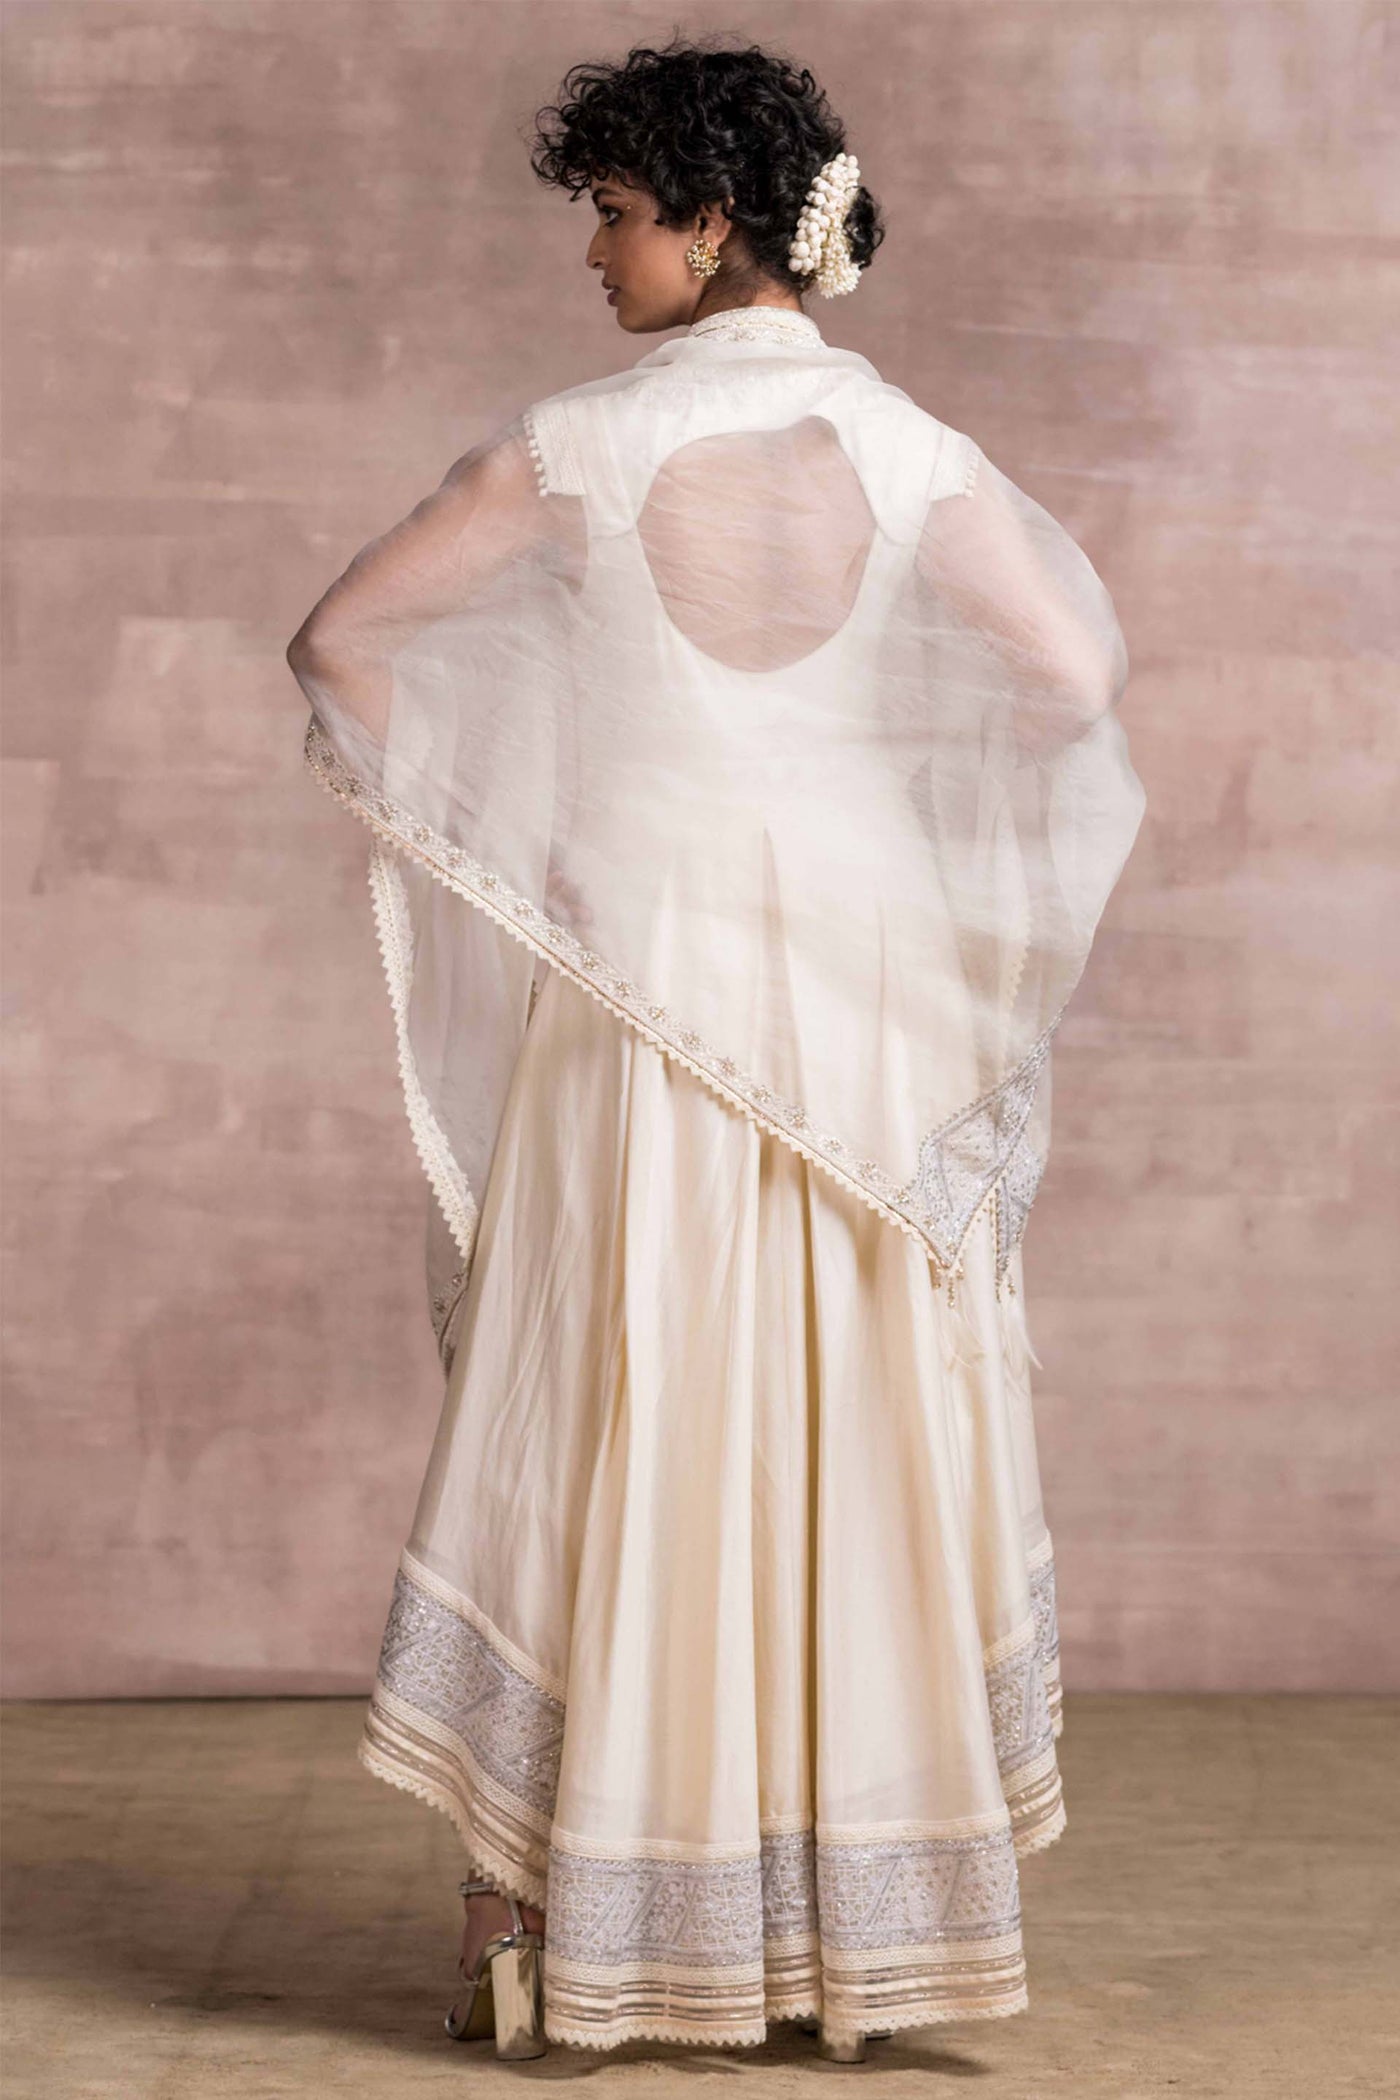 Tarun Tahiliani Asymmetrical Kalidar Kurta With Matching Dhoti Pants And Sheer Silk Scarf ivory festive indian designer wear online shopping melange singapore